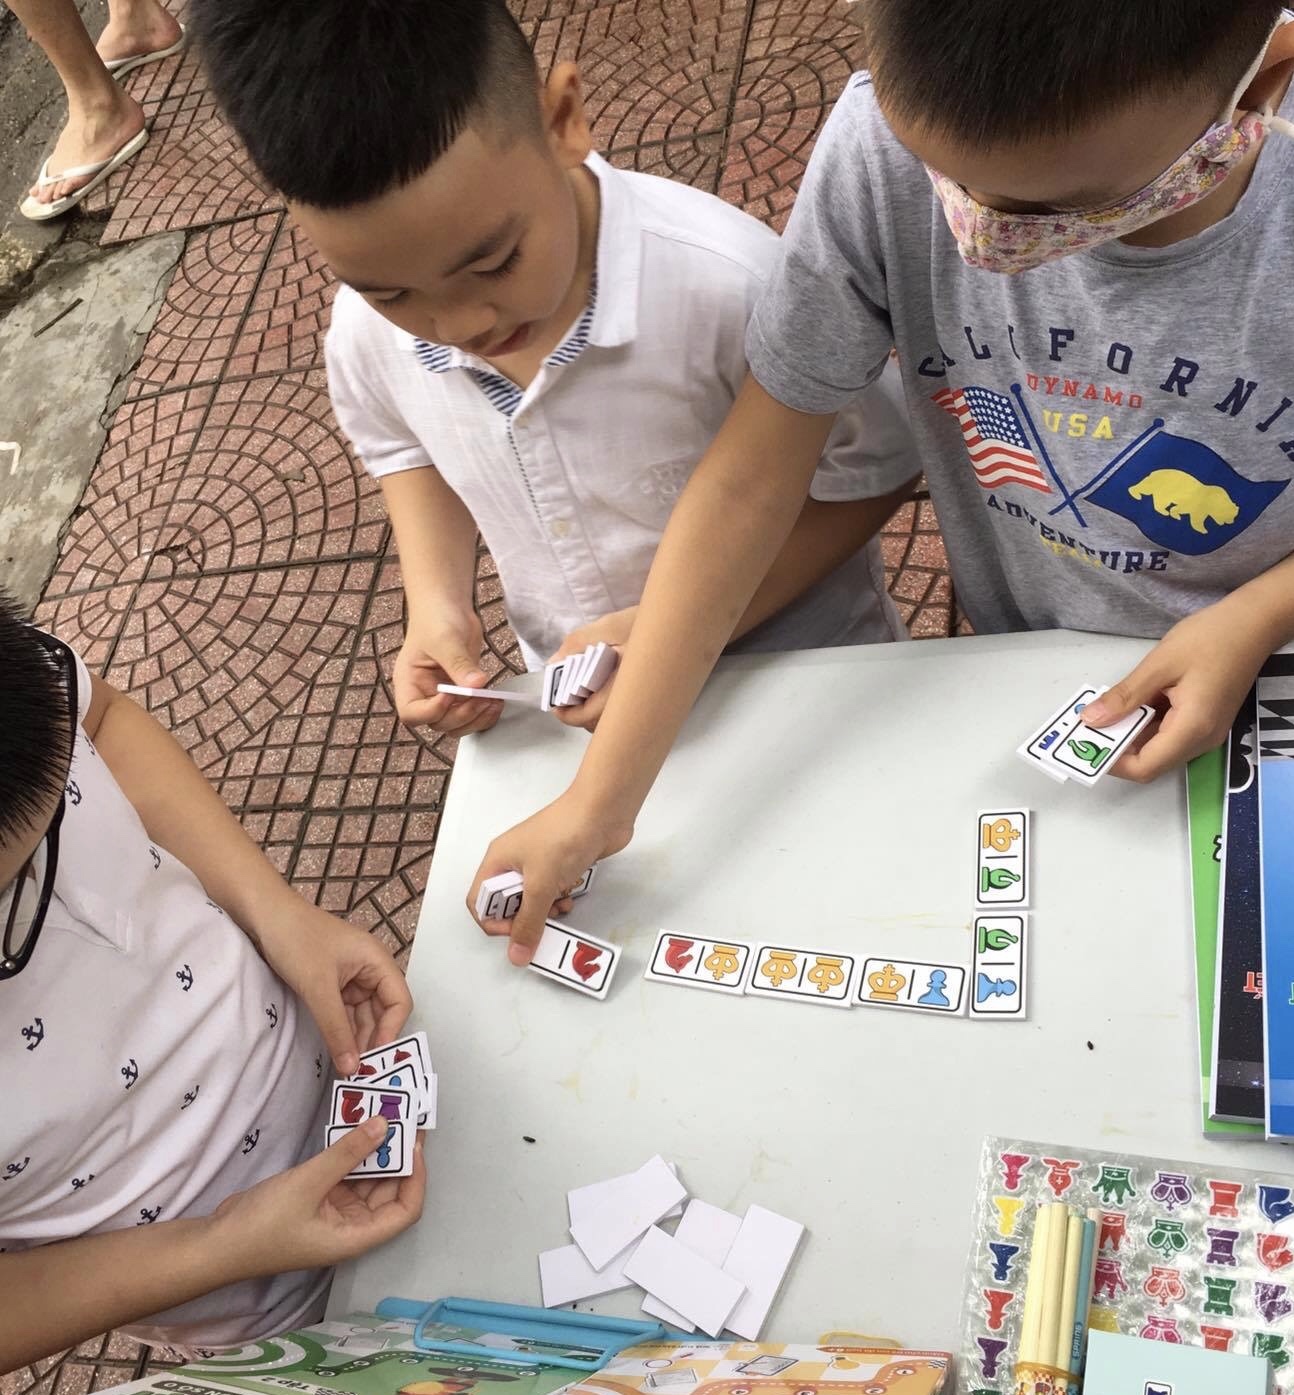 Domino Cờ vua 28 quân, trò chơi trí tuệ cho trẻ em